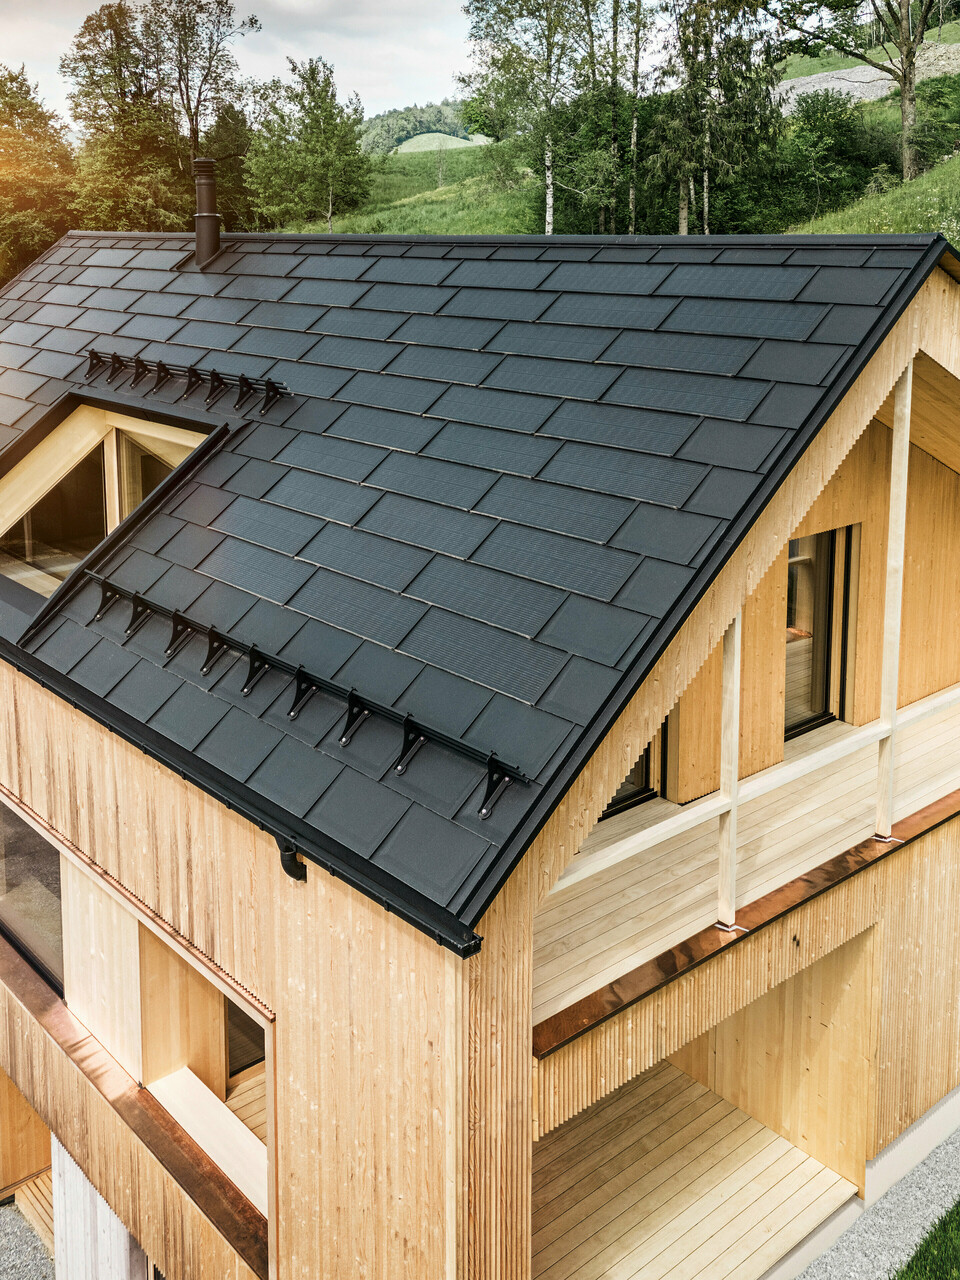 PREFA Solardachplatte und PREFA Dachplatte R.16 in Schwarz verlegt auf einem Einfamilienhaus mit Holzfassade im österreichischen Ort Egg. 